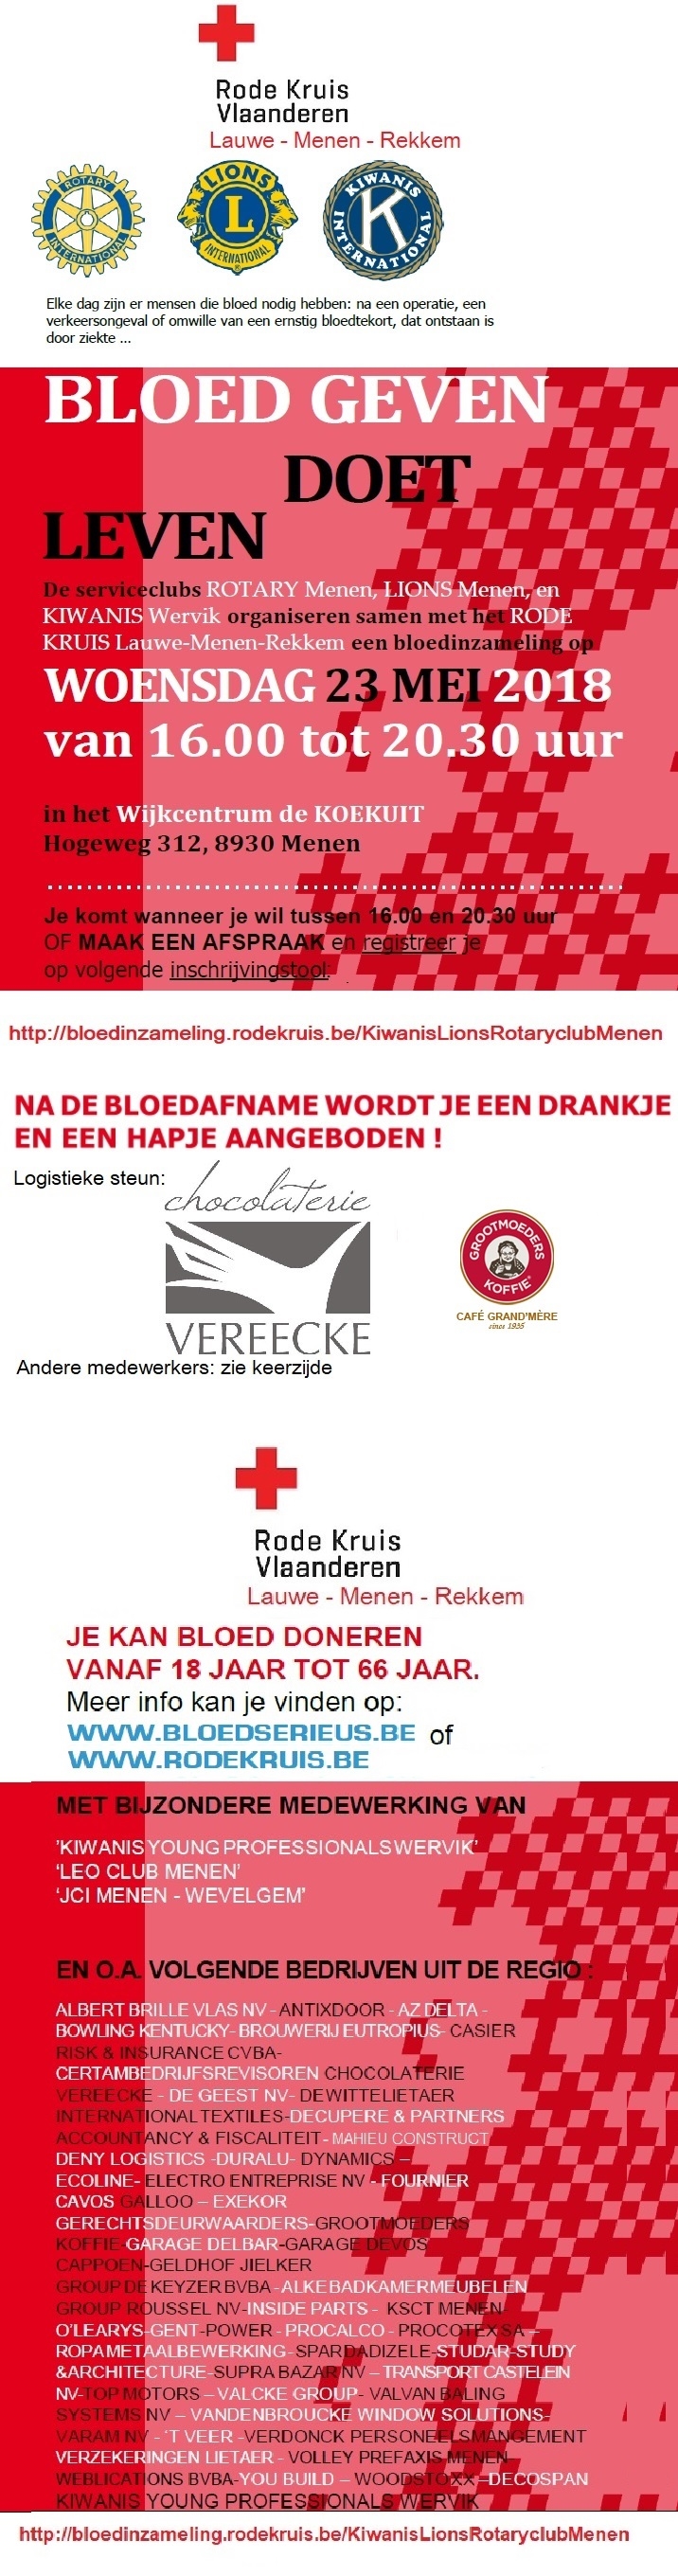 Bloedinzameling Rode Kruis Vlaanderen